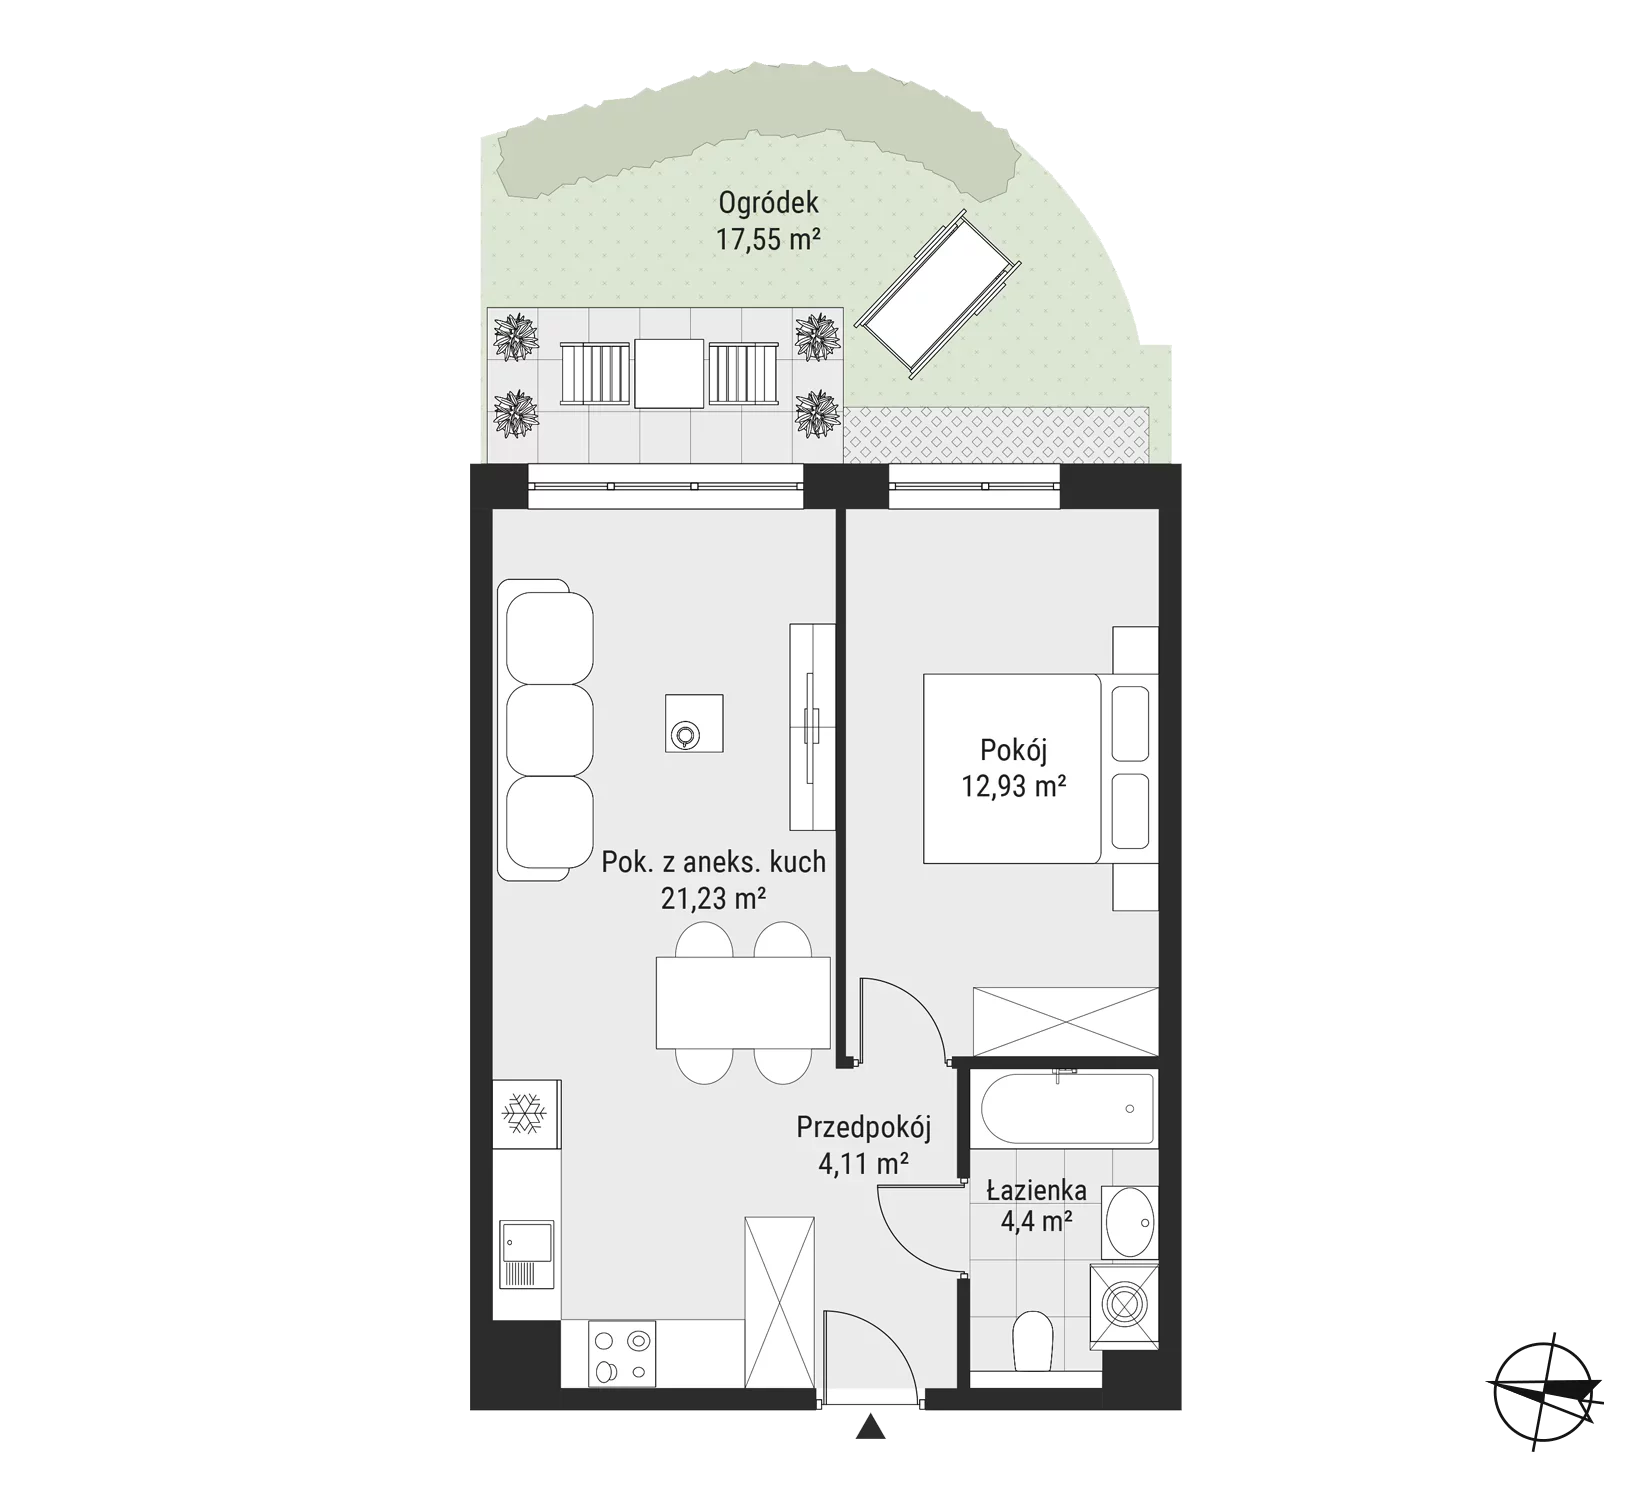 Mieszkanie 42,67 m², parter, oferta nr mieszkanie 5, Bytkowska 3.0, Katowice, Wełnowiec-Józefowiec, ul. Bytkowska